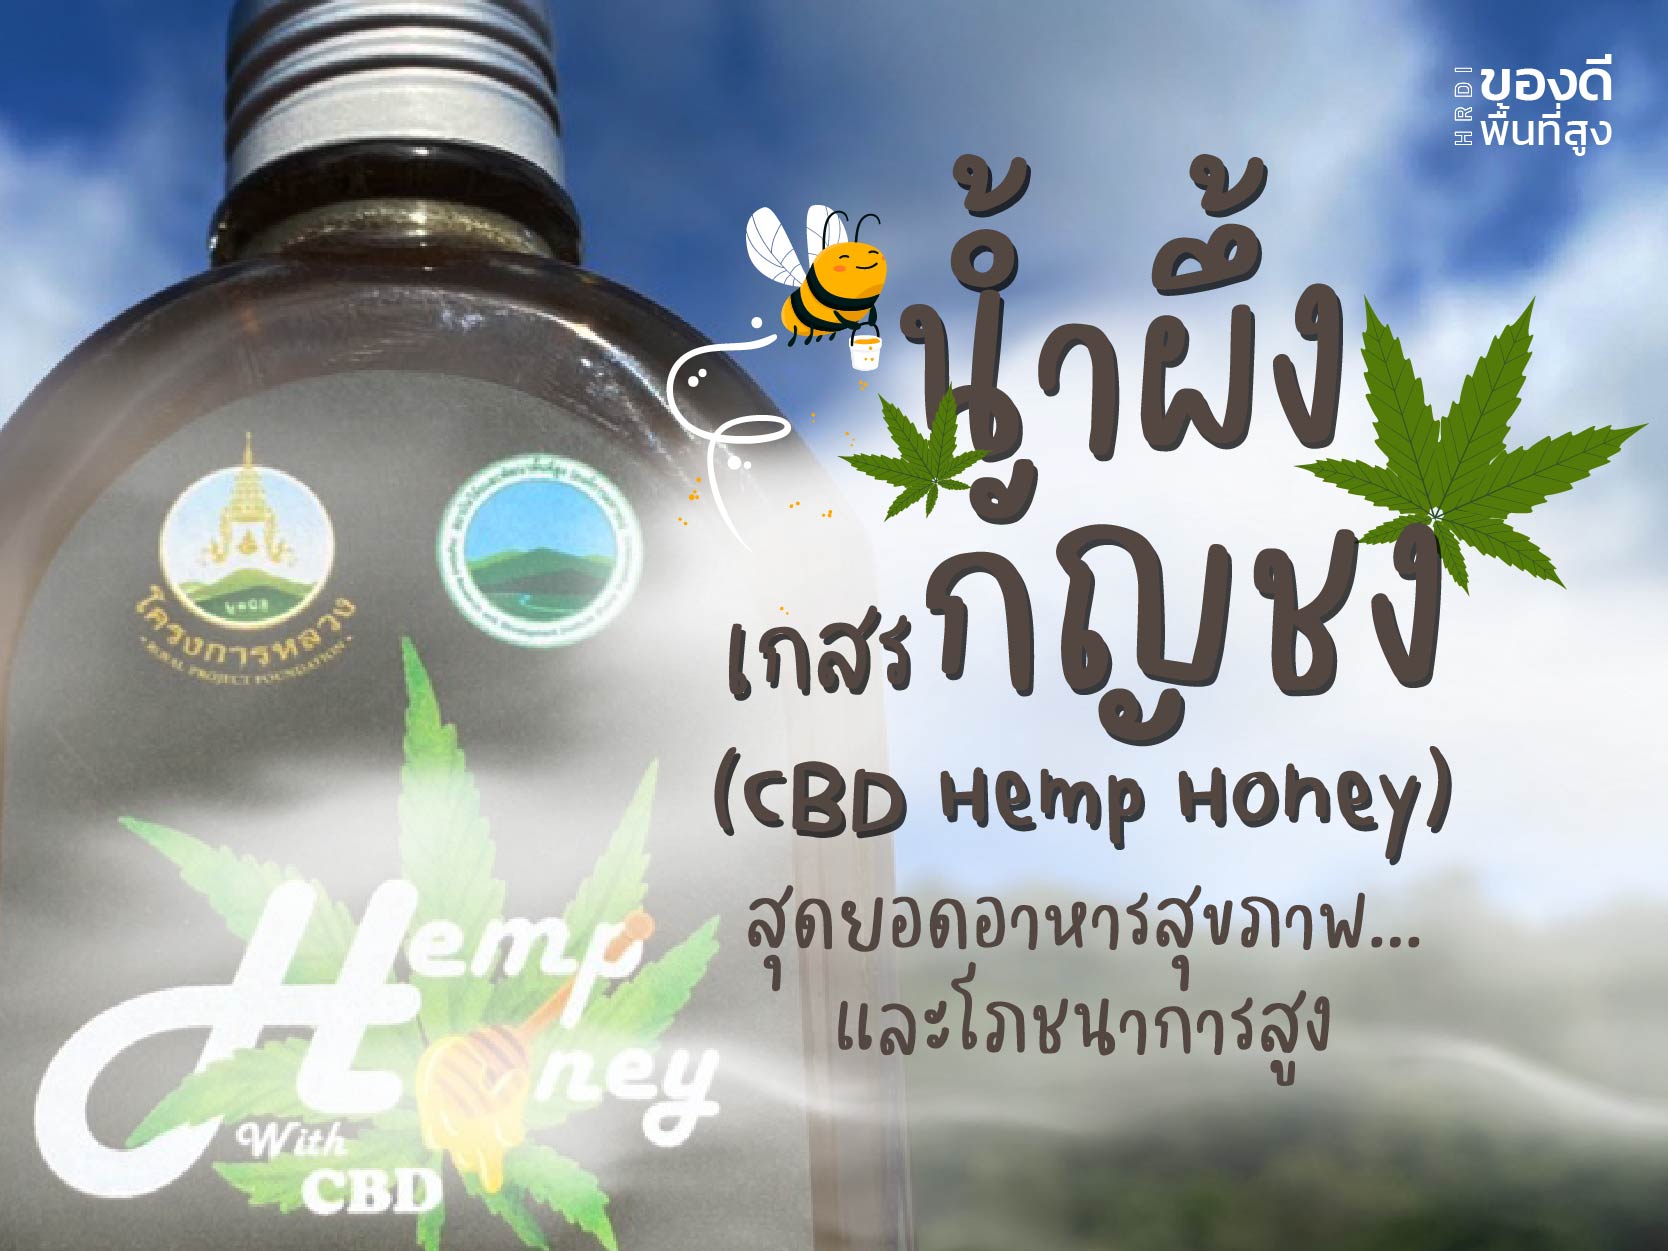 น้ำผึ้งเกสรกัญชง (CBD Hemp Honey) สุดยอดอาหารสุขภาพและโภชนาการสูง